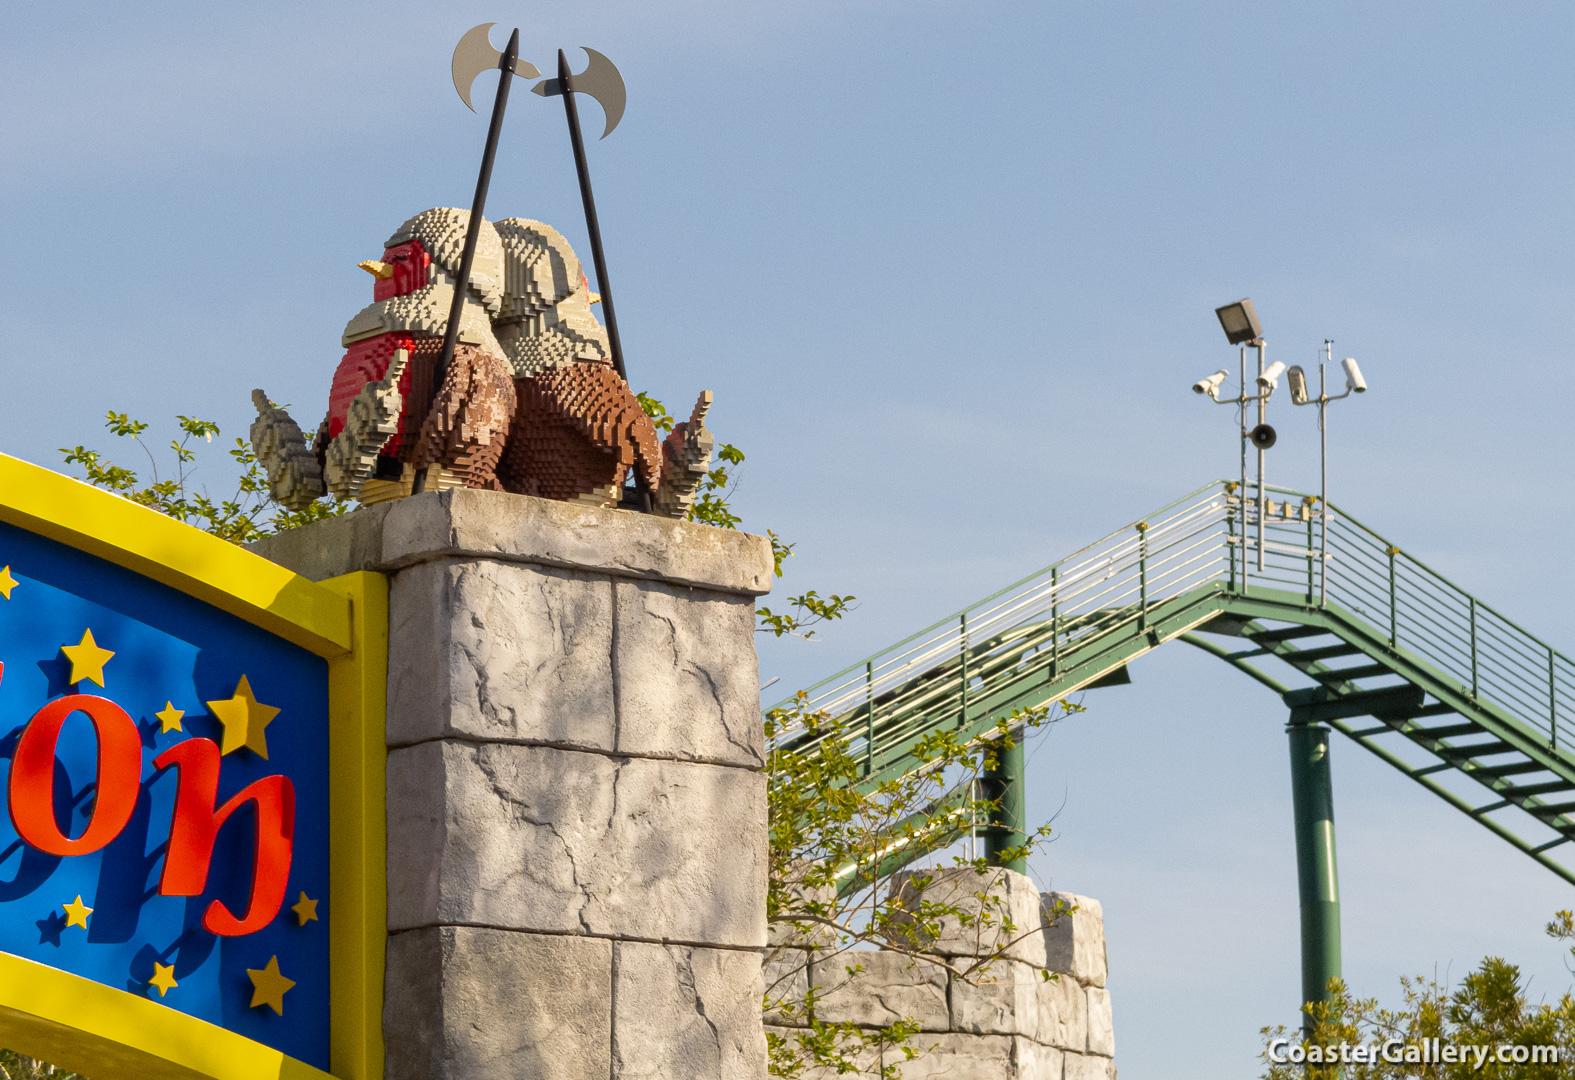 Pictures of the Legoland Florida amusement park